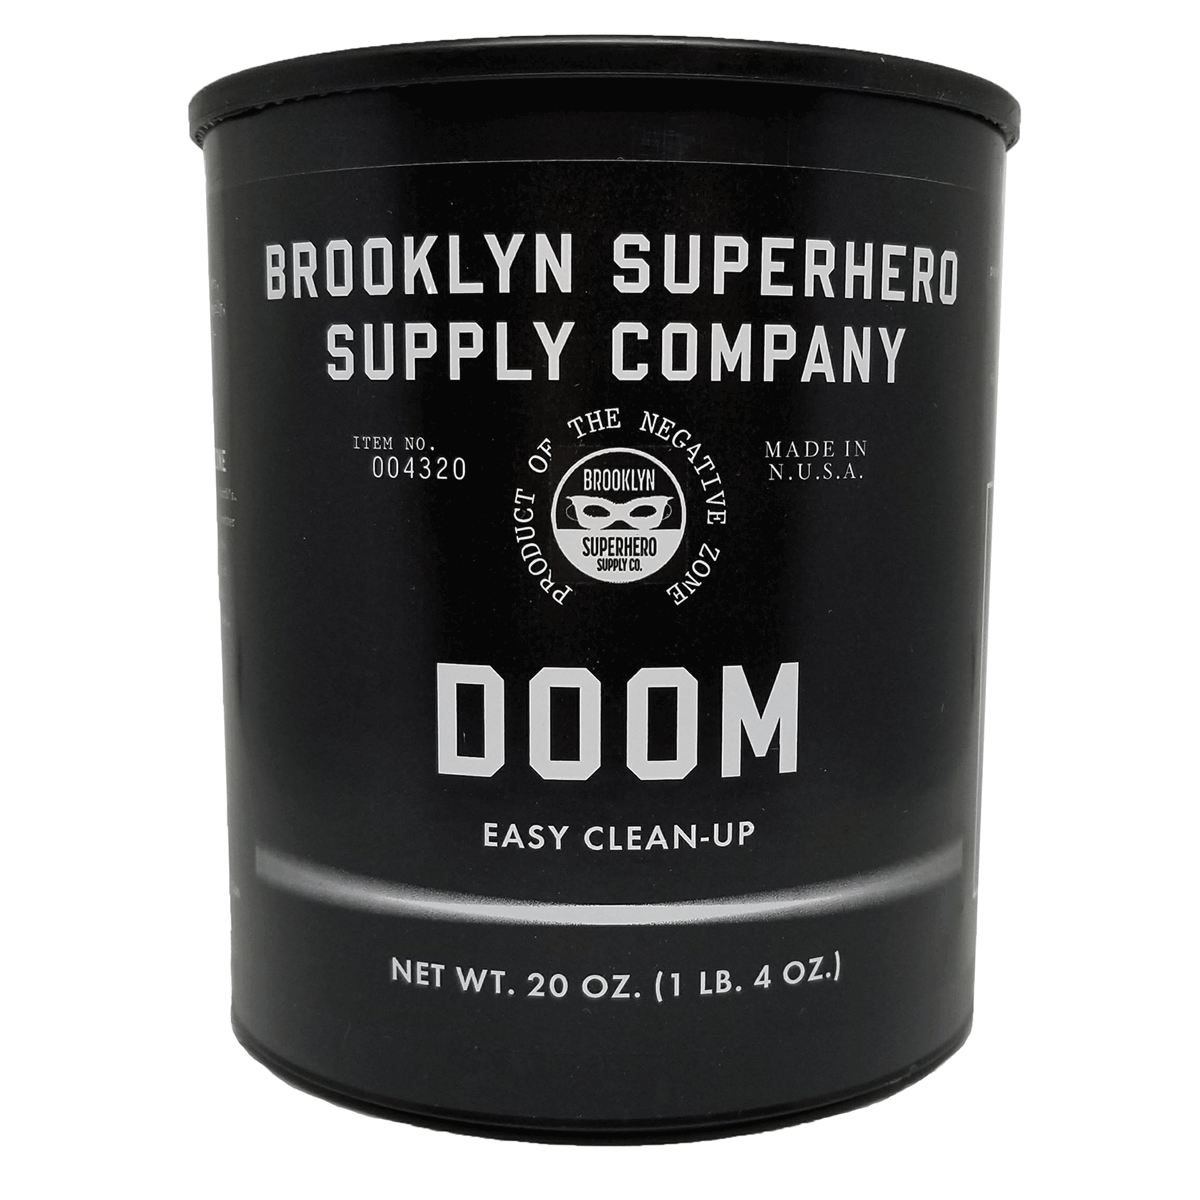 Glowing Putty, Gels & Slime Kit – Brooklyn Superhero Supply Co.